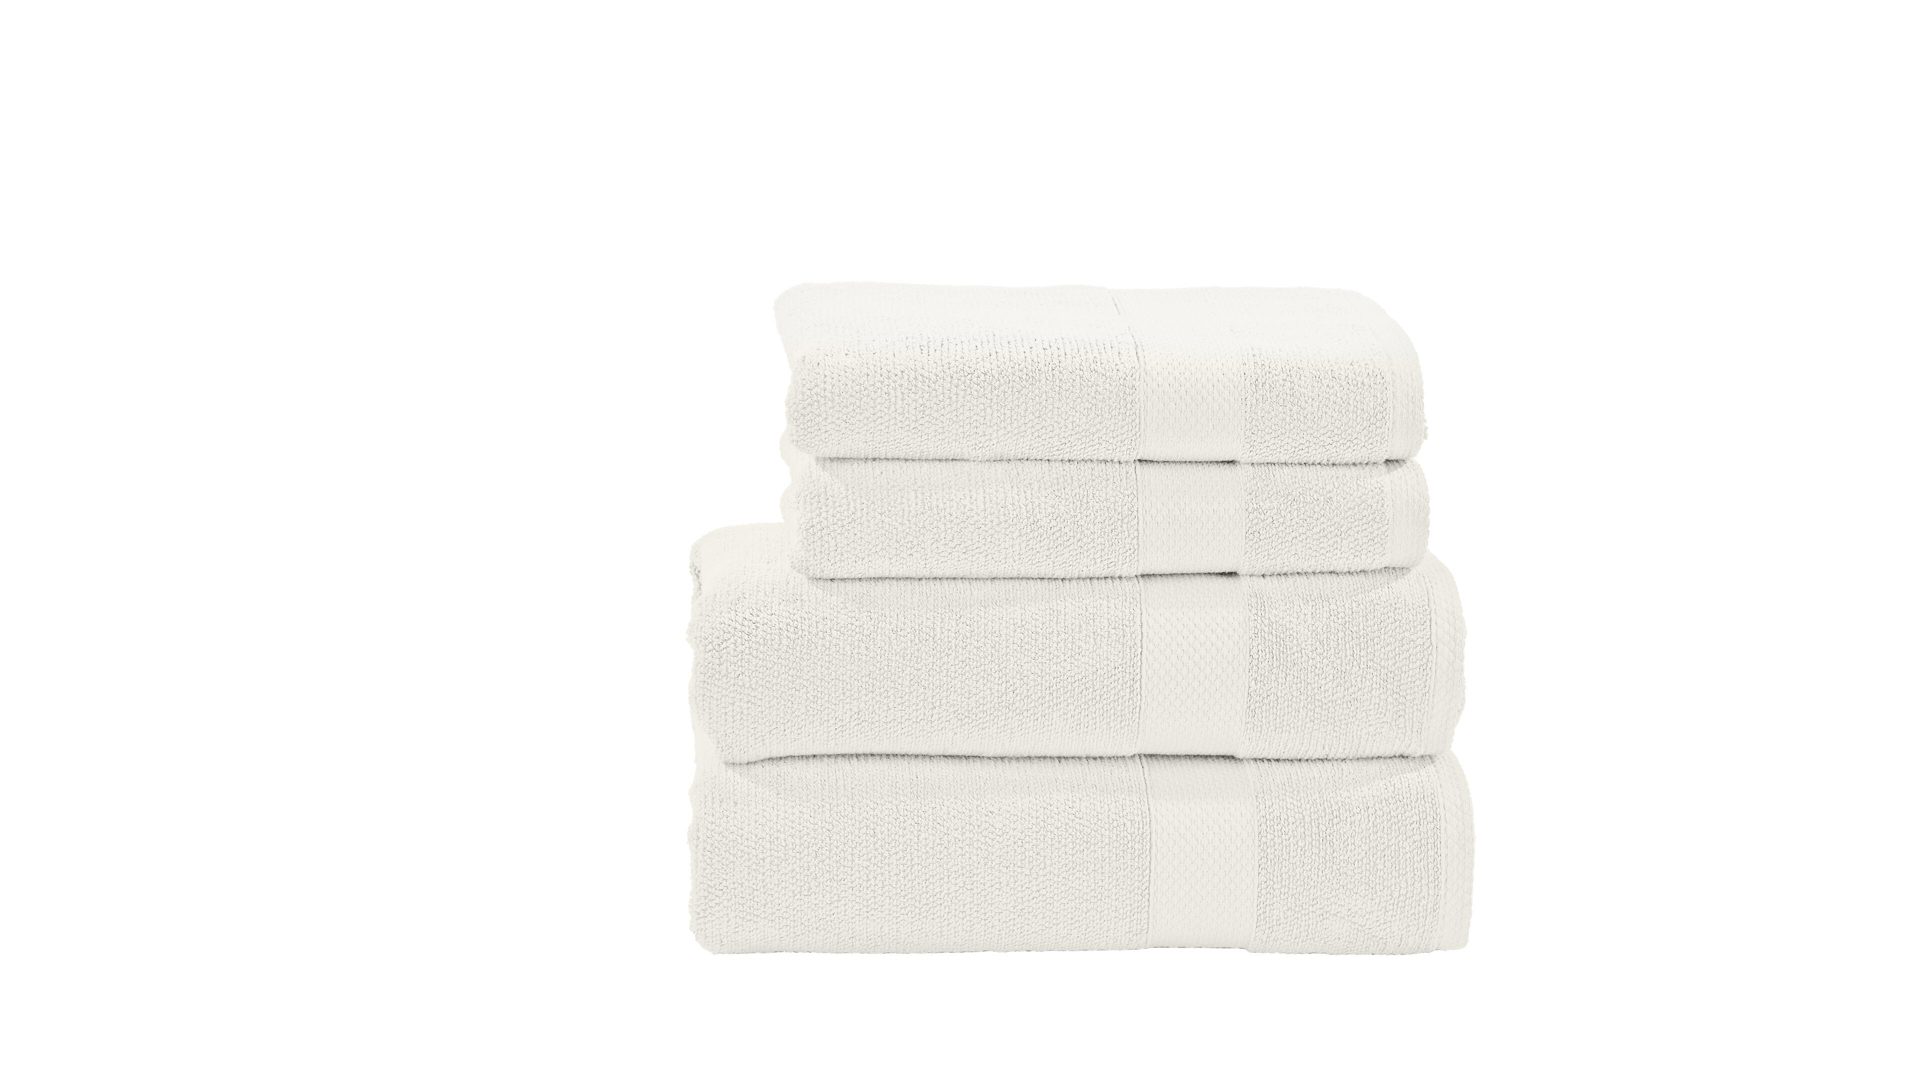 Handtuch-Set Done.® be different aus Stoff in Weiß DONE.®Handtuch-Set Deluxe weiße Baumwolle – vierteilig